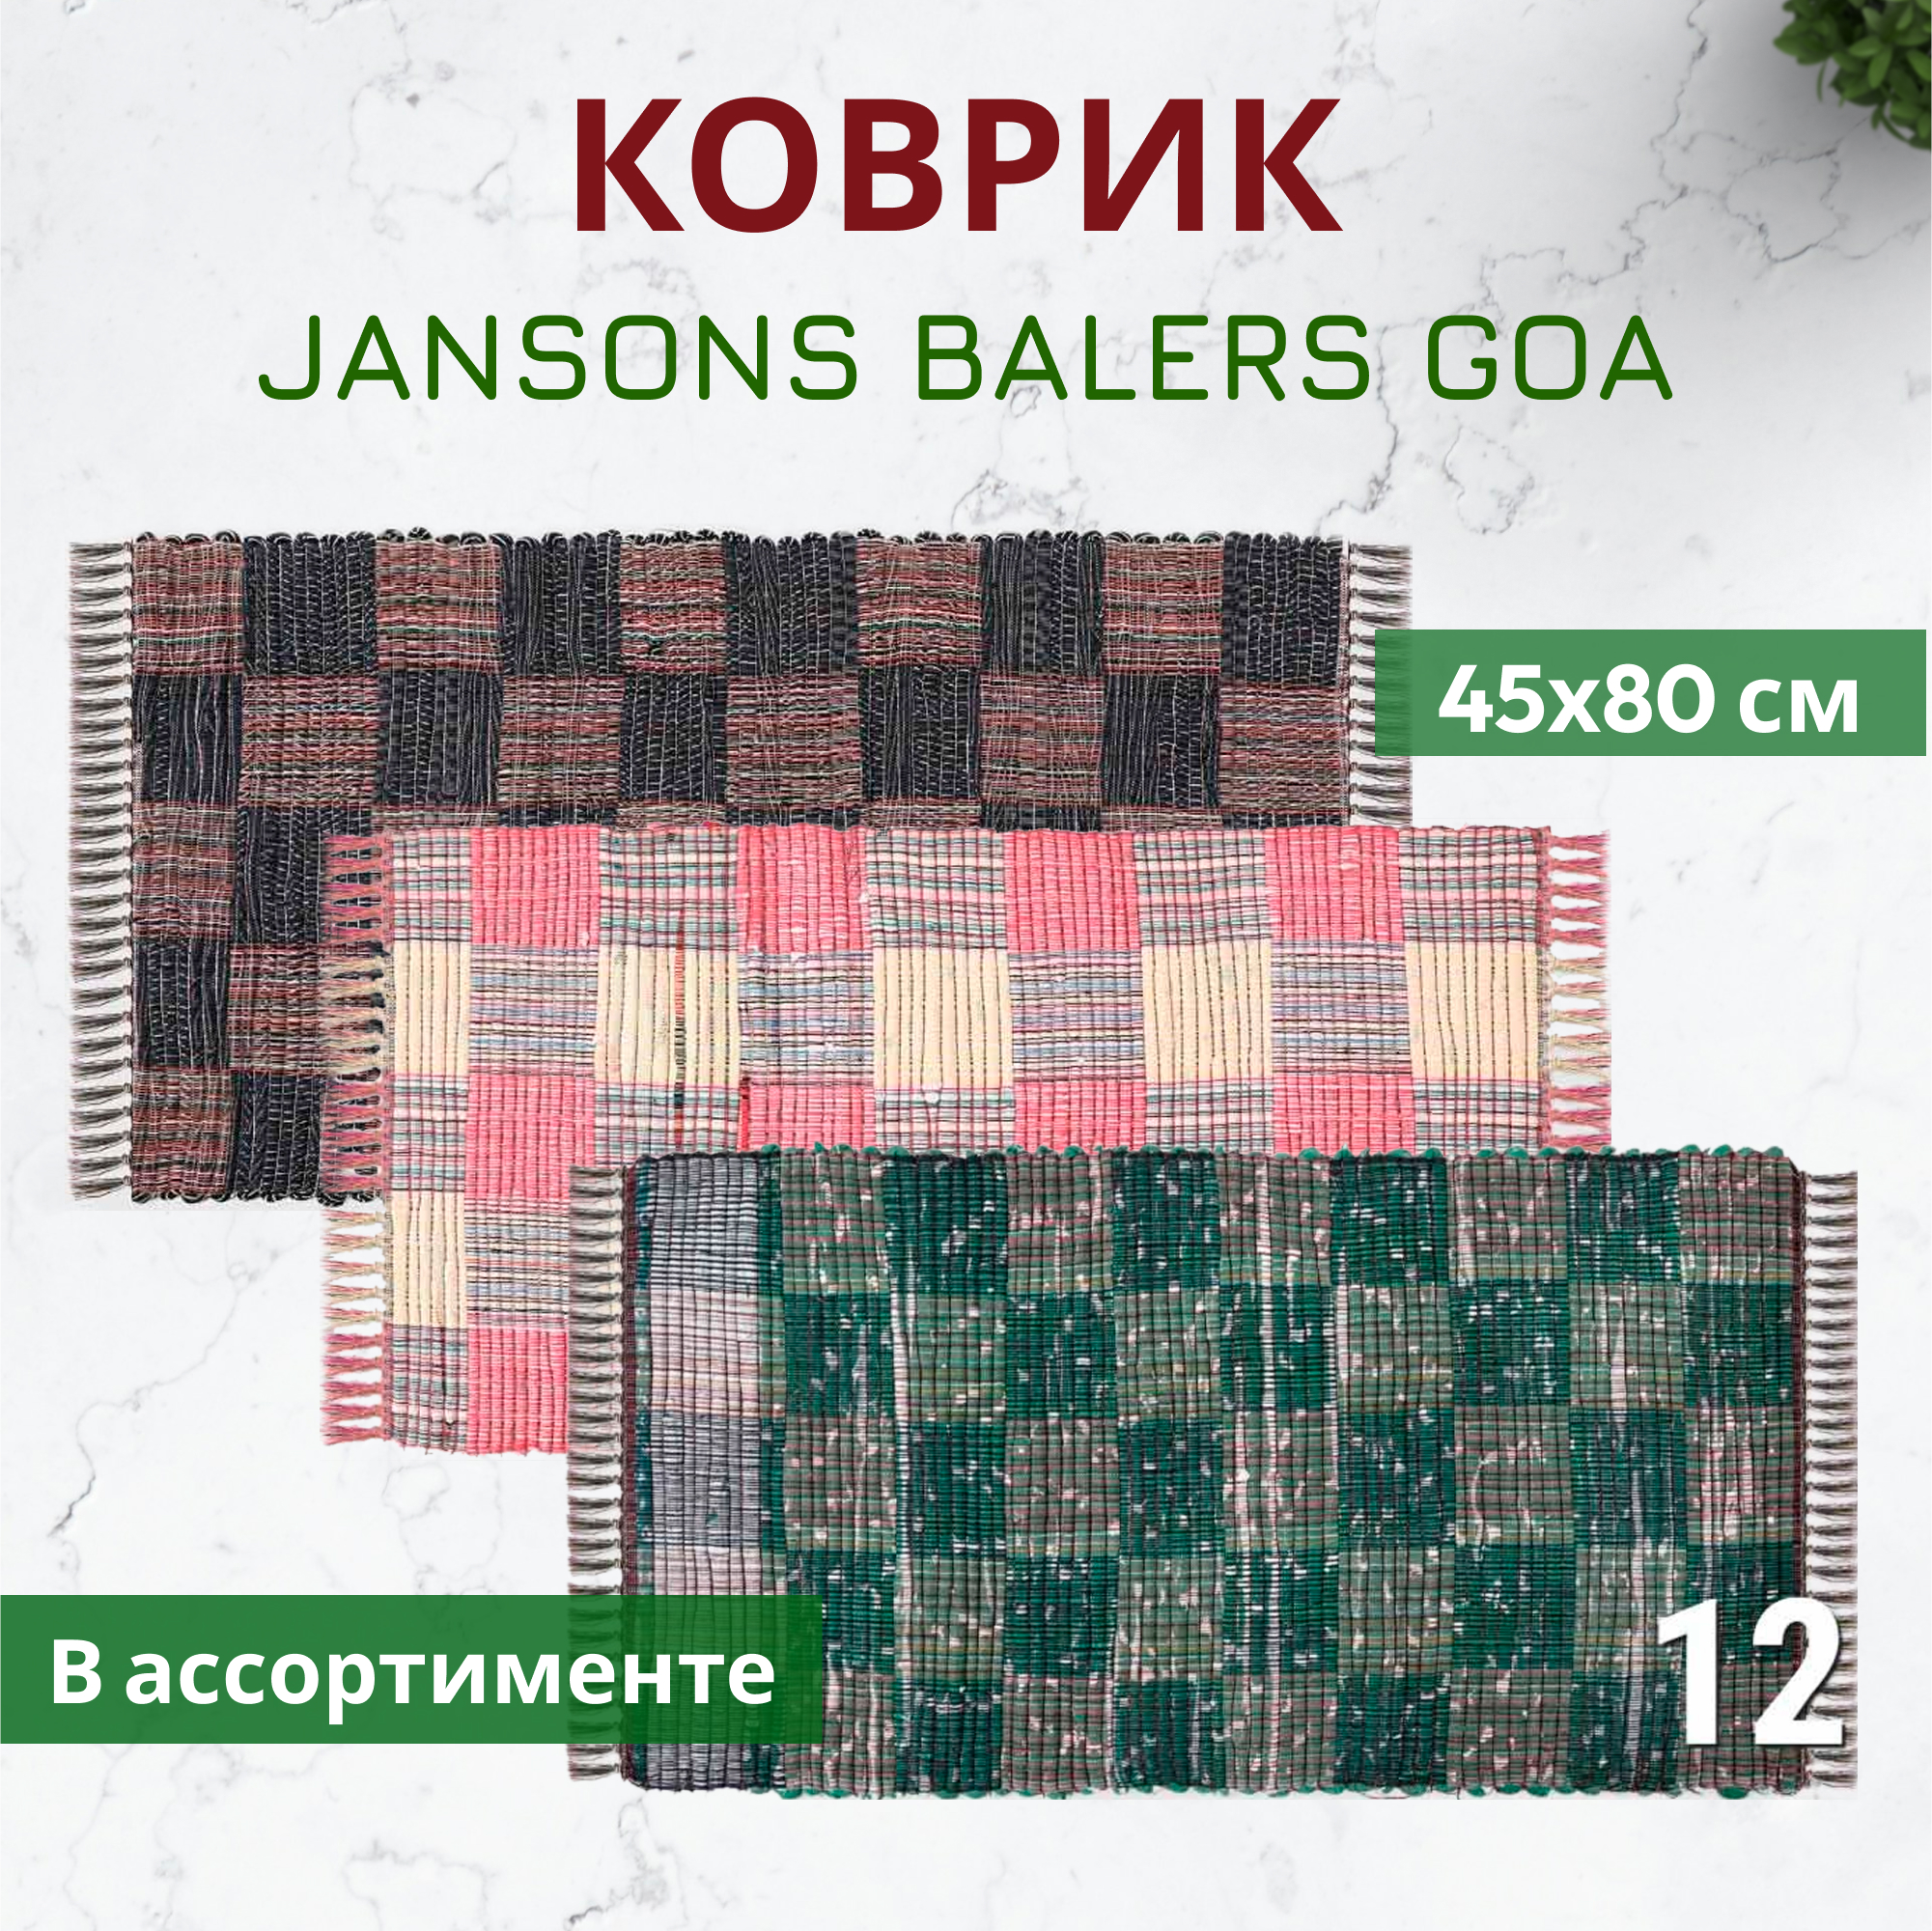 Коврик Jansons Balers Goa в ассортименте 45x80 см, цвет красный - фото 2